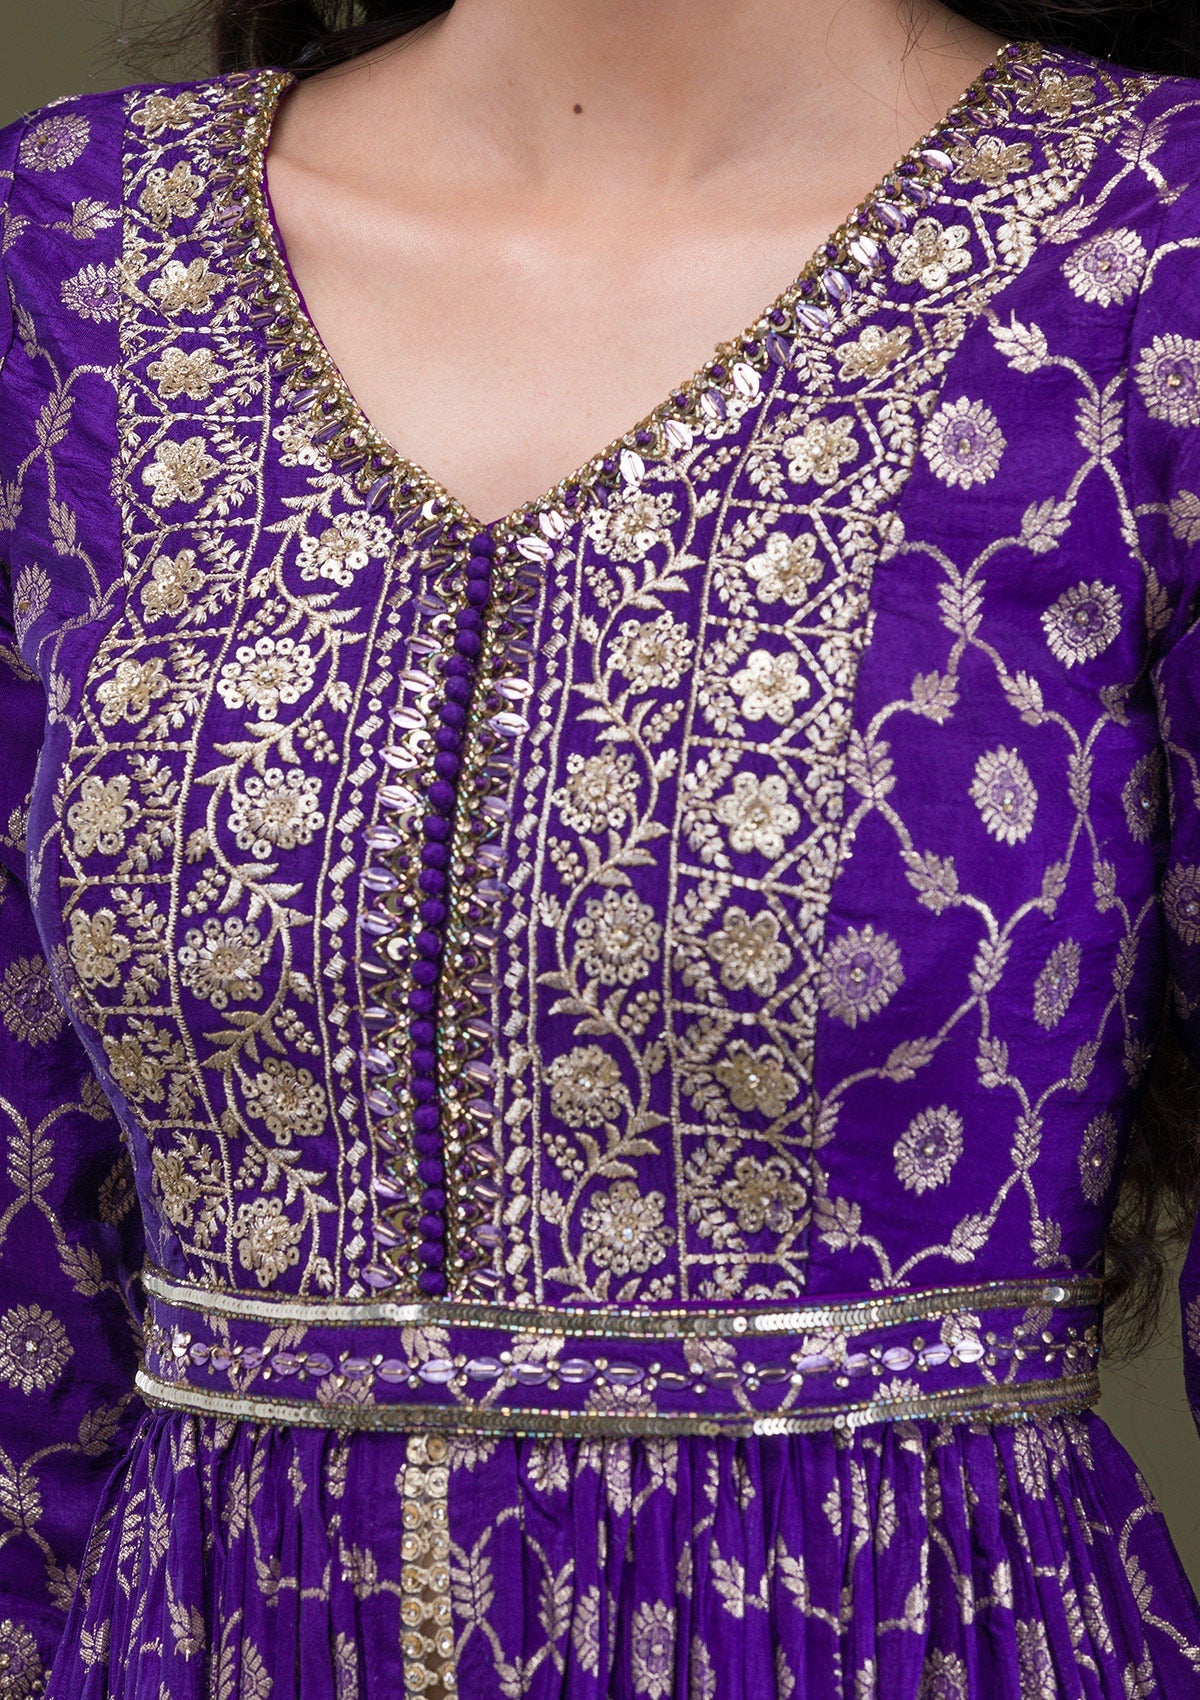 Purple Zariwork Art Silk Readymade Salwar Suit-Koskii